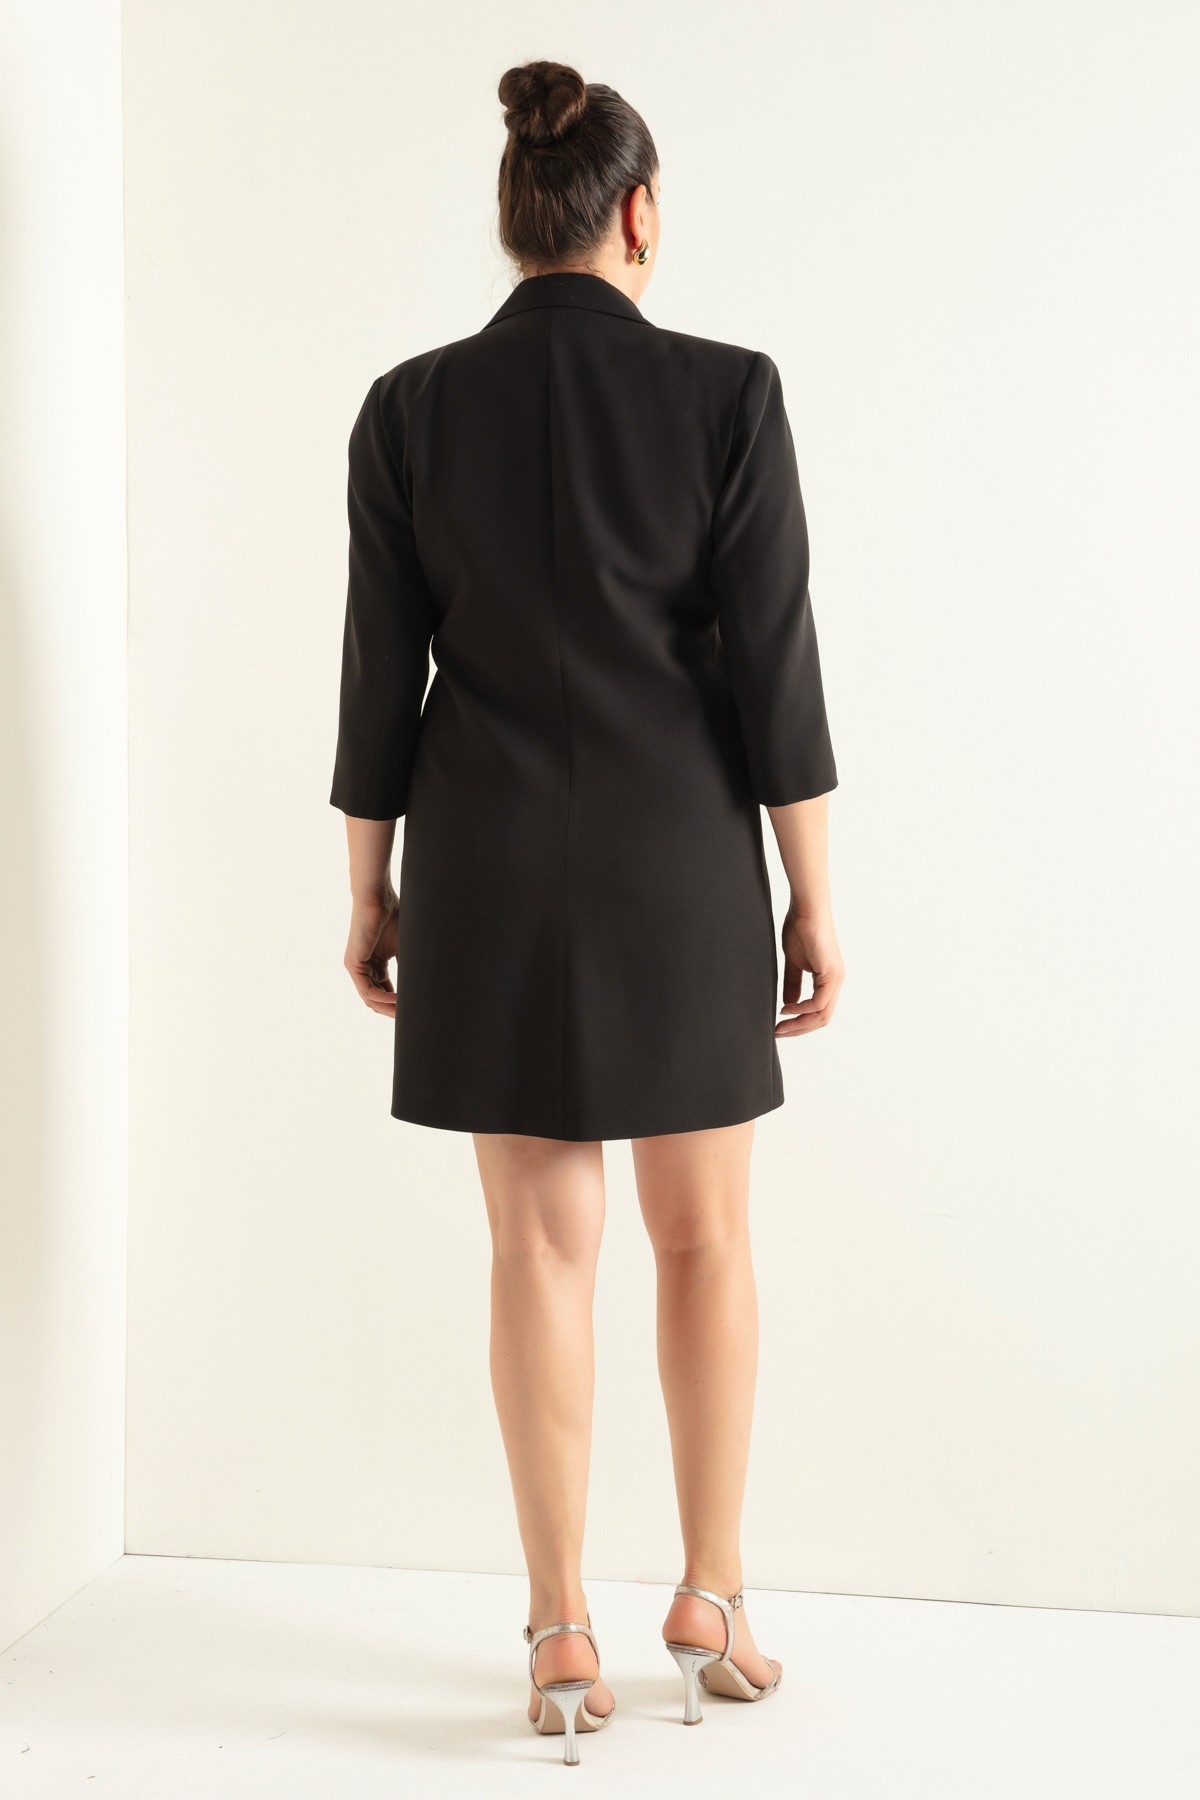 Kadın Zincir Detaylı Büyük Beden Ceket Elbise - Siyah